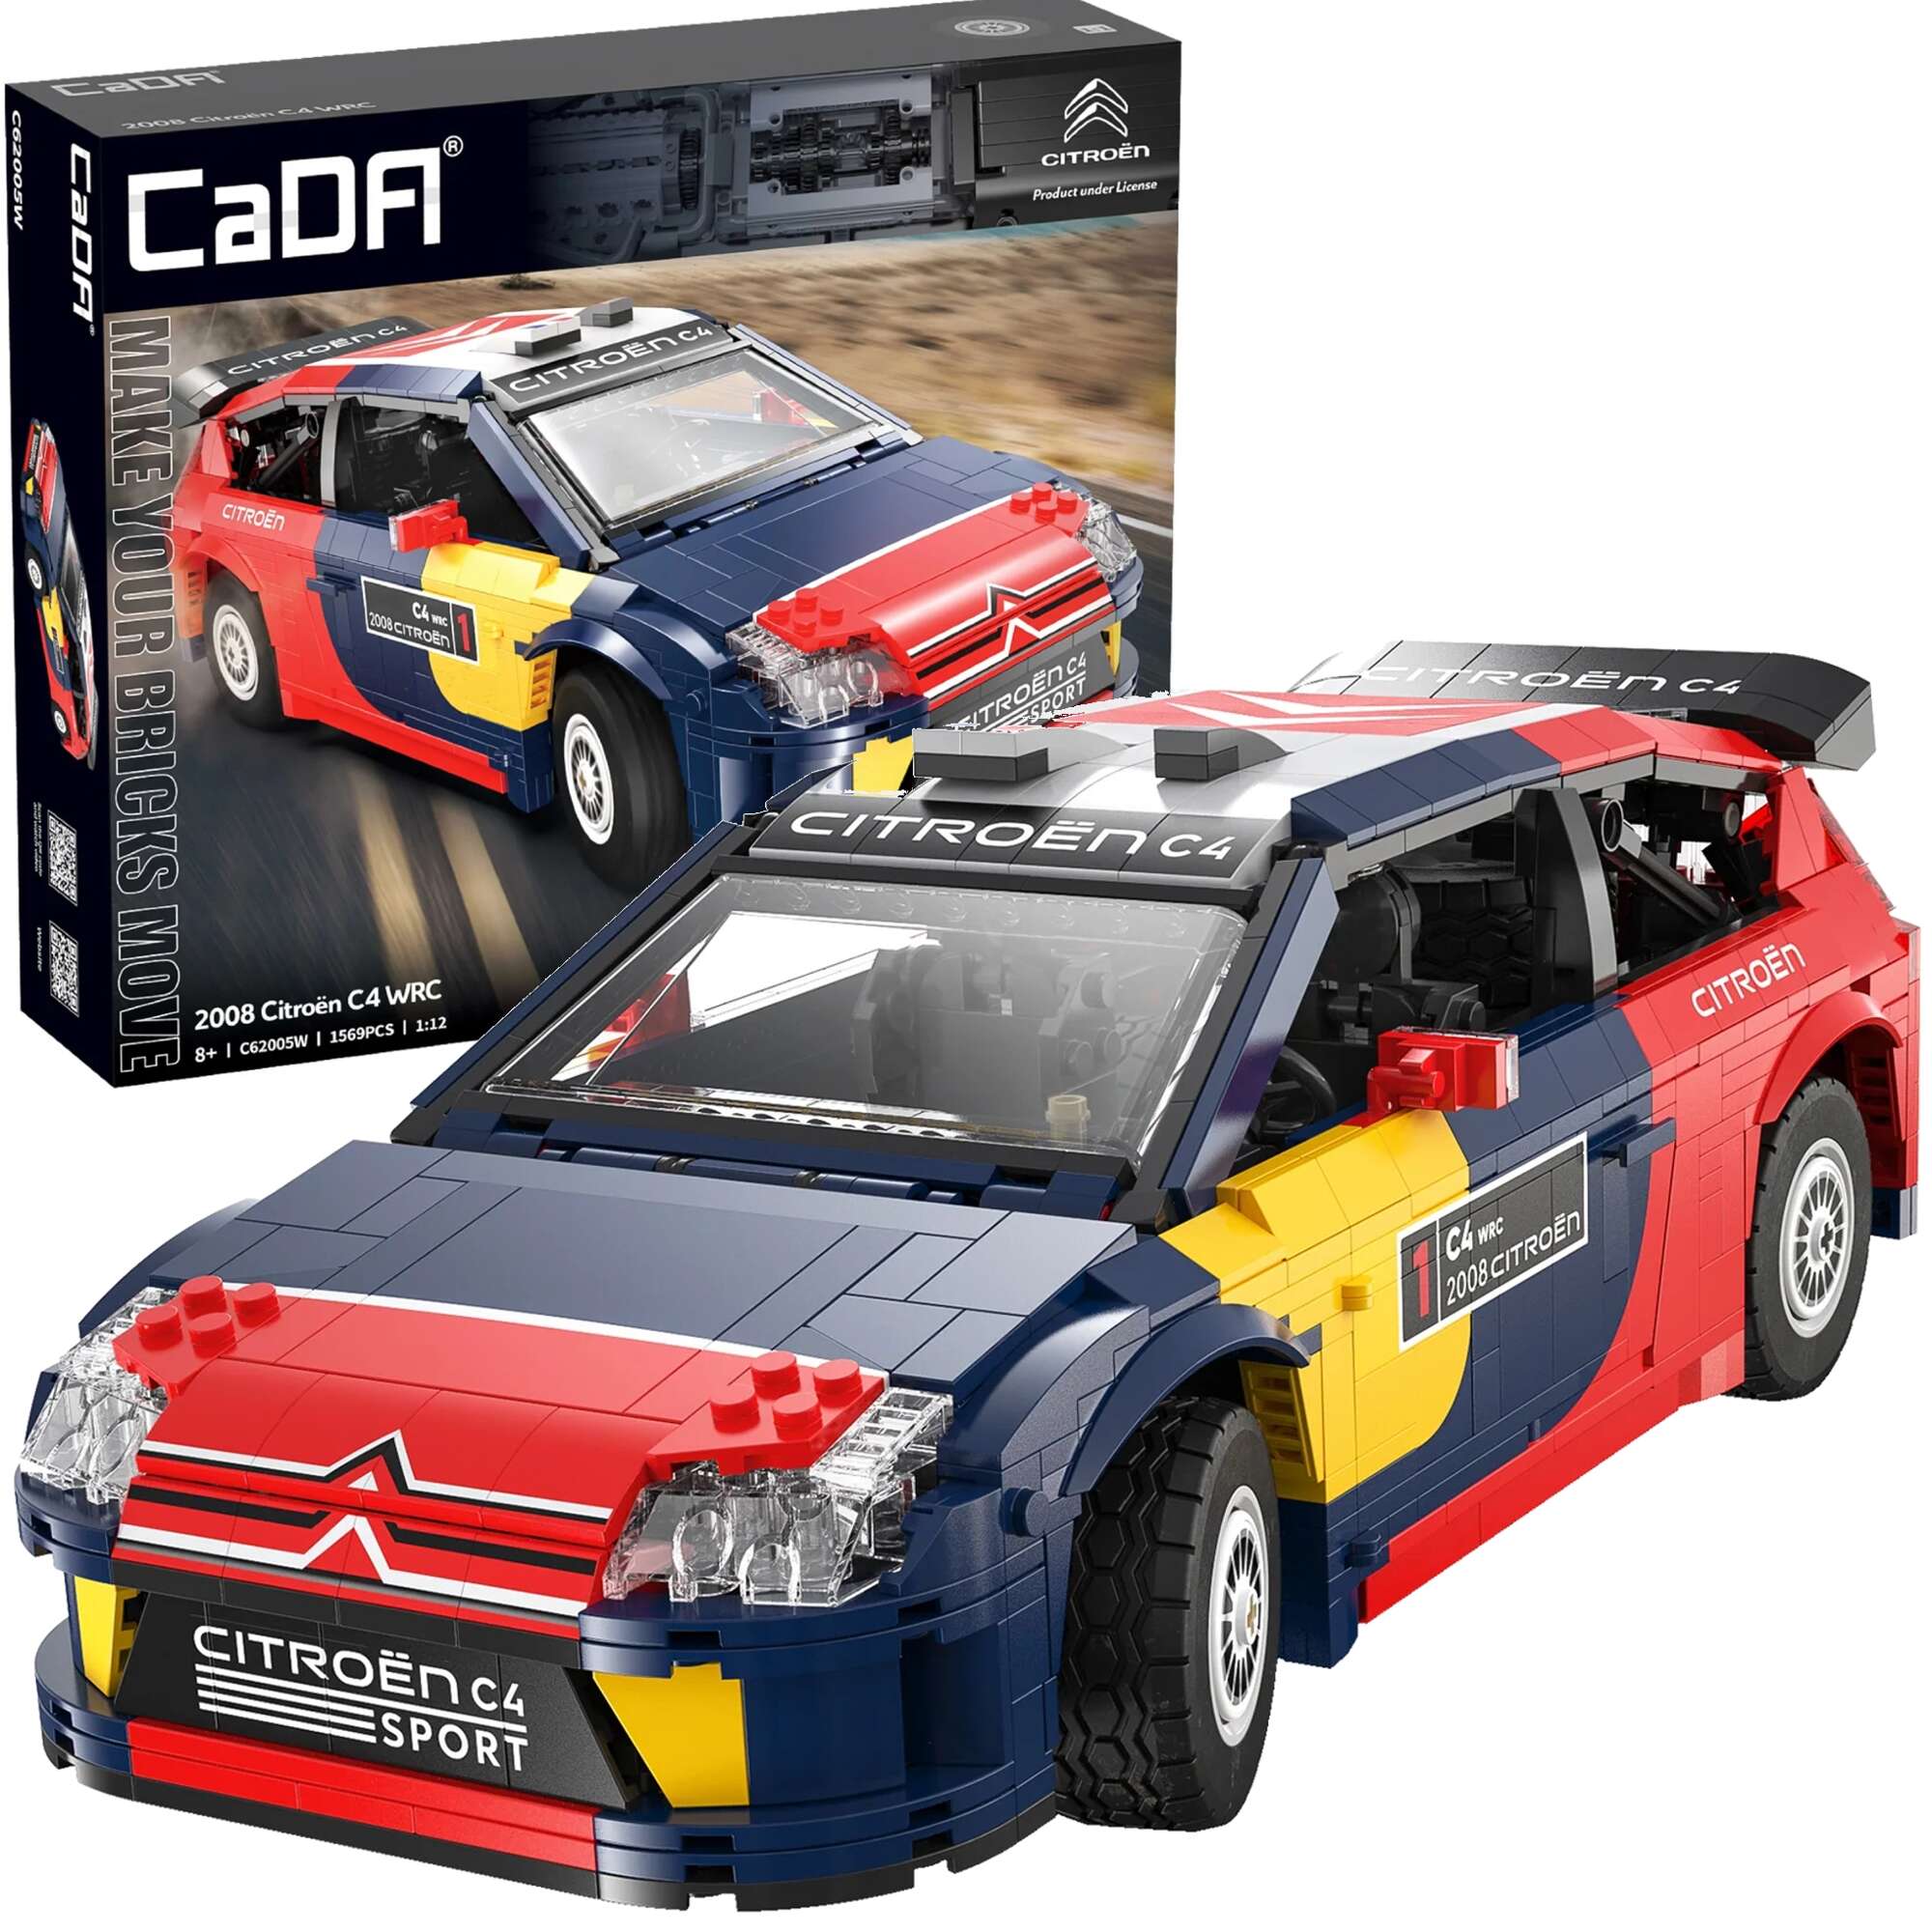 Klocki konstrukcyjne CaDA wycigwka Samochd wycigowy Citroen C4 WRC Auto sportowe 1569 elementw